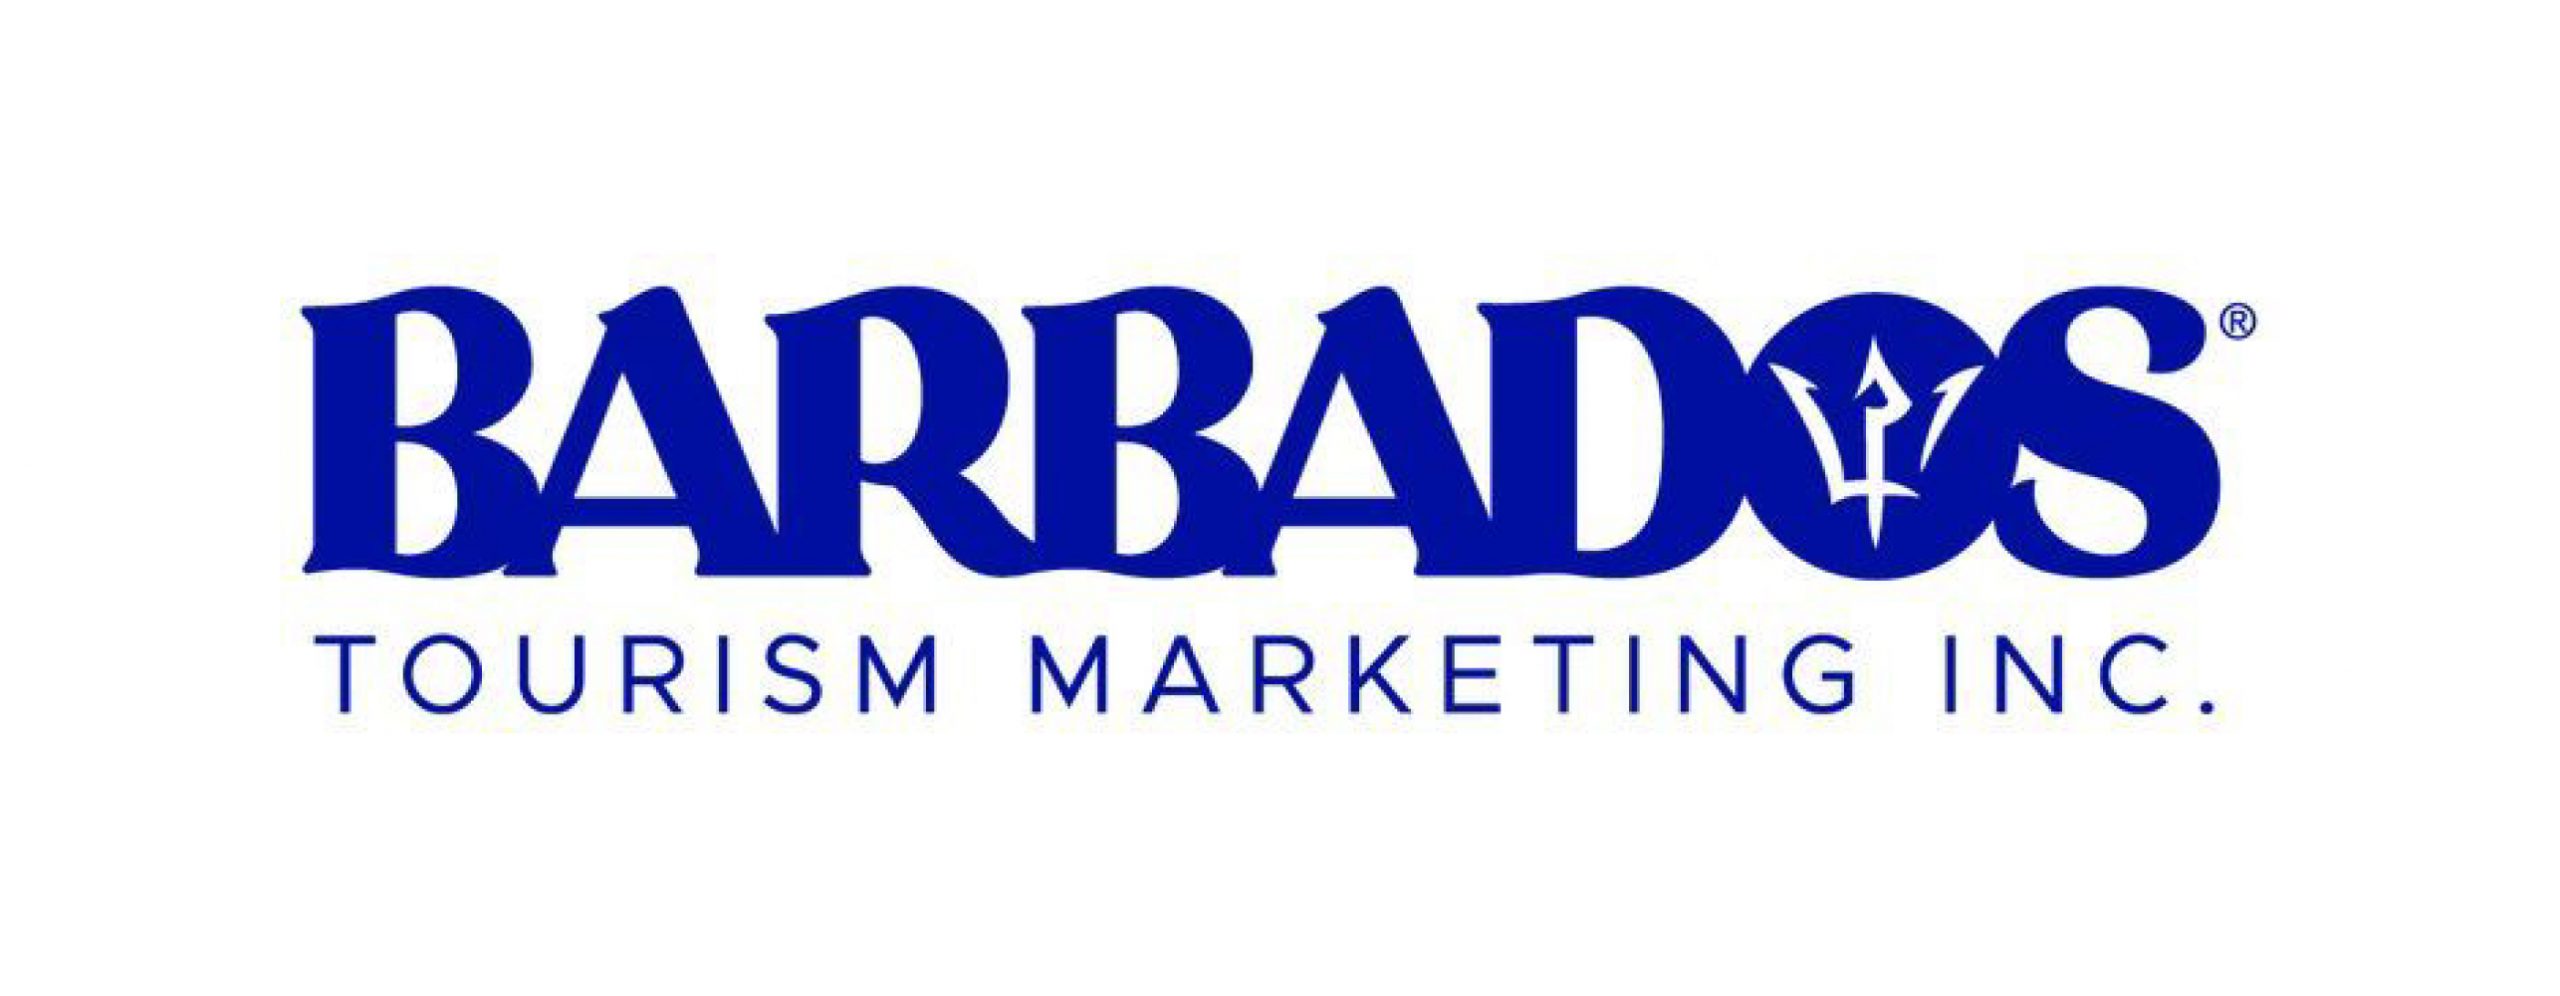 Barbados Tourism Marketing